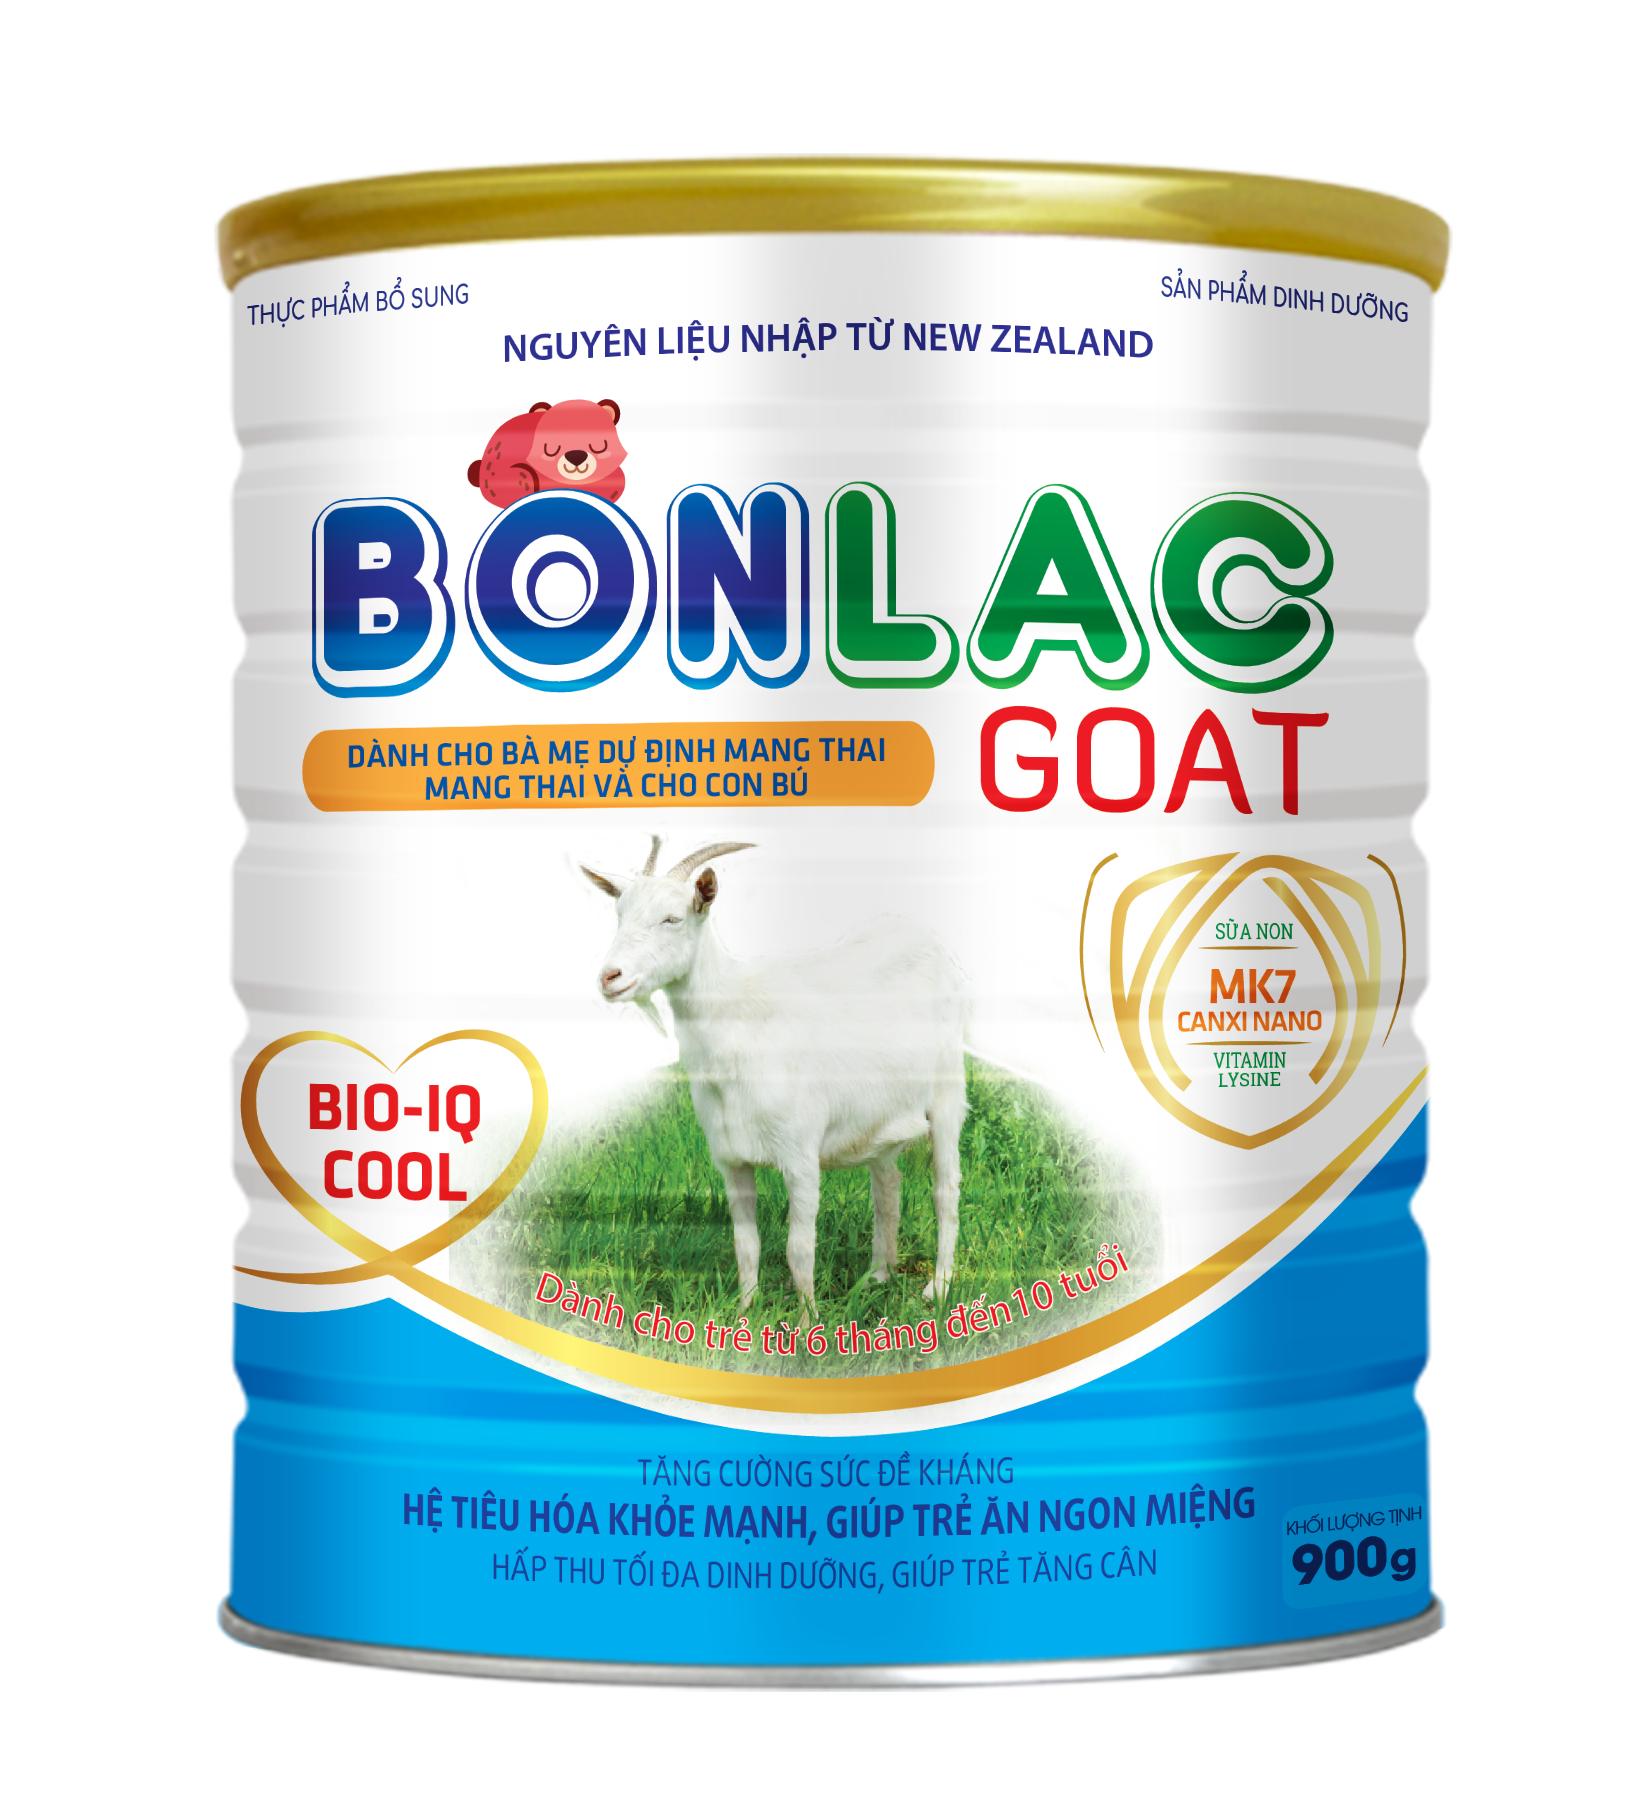 Kết quả hình ảnh cho bonlac goat bio-iq cool